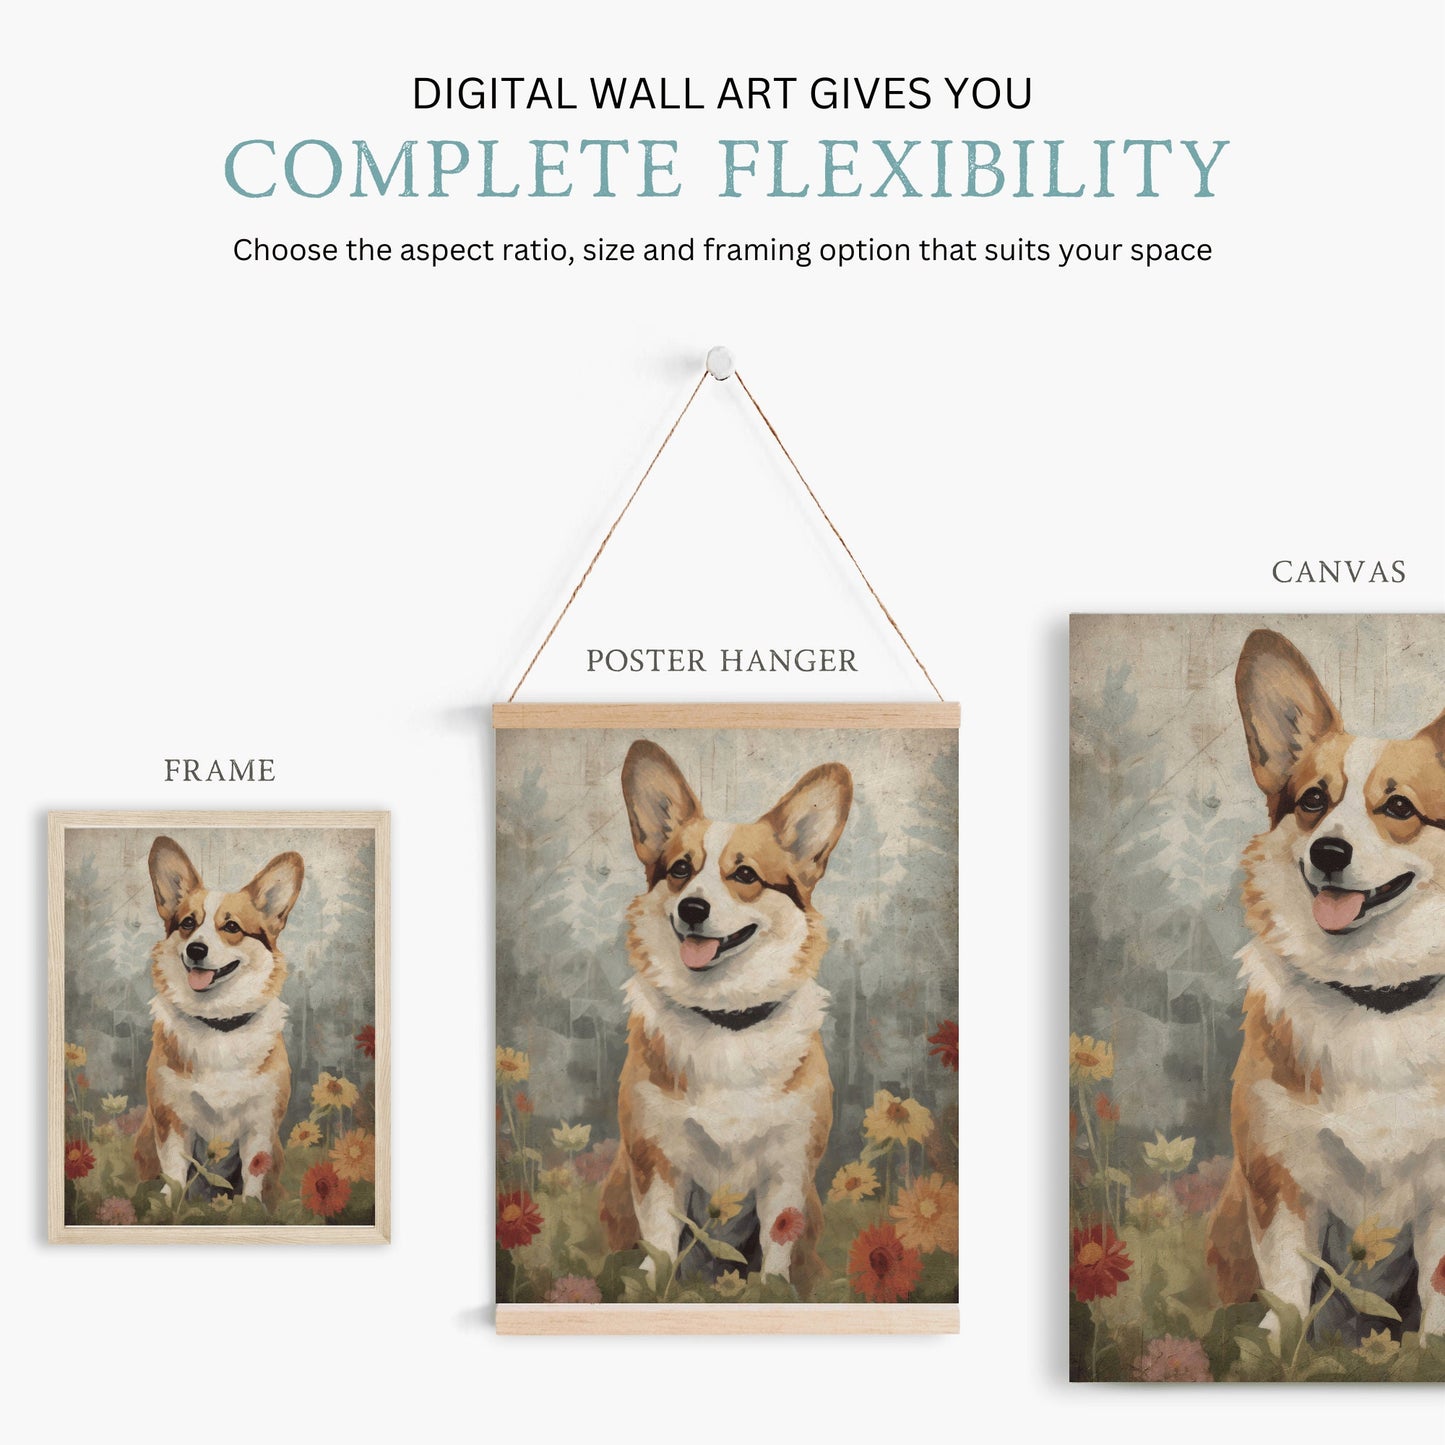 Corgi Art Print, Printable Digital Dog Decor, Dogs with Flowers Wall Art, Corgi Painting, Vintage Dog Print,  Corgi Lovers & Owners Gift